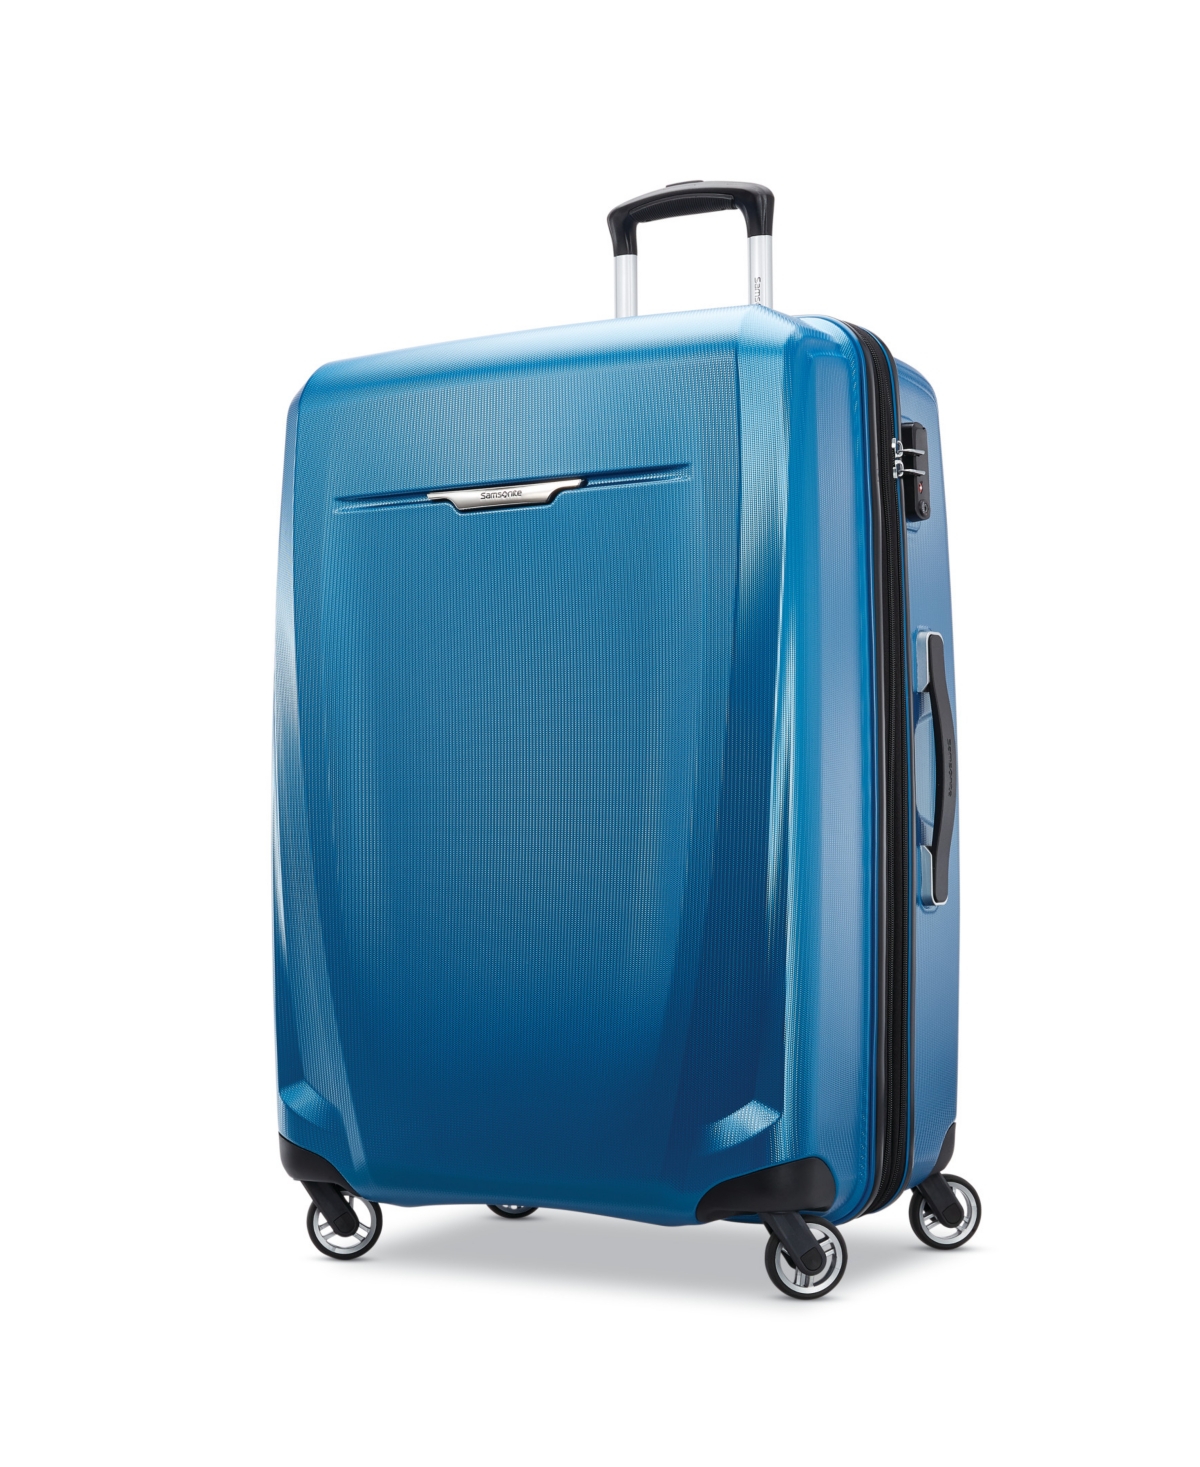 Samsonite Winfield 3 Dlx 28 Spinner Suitcase In Blue/navy